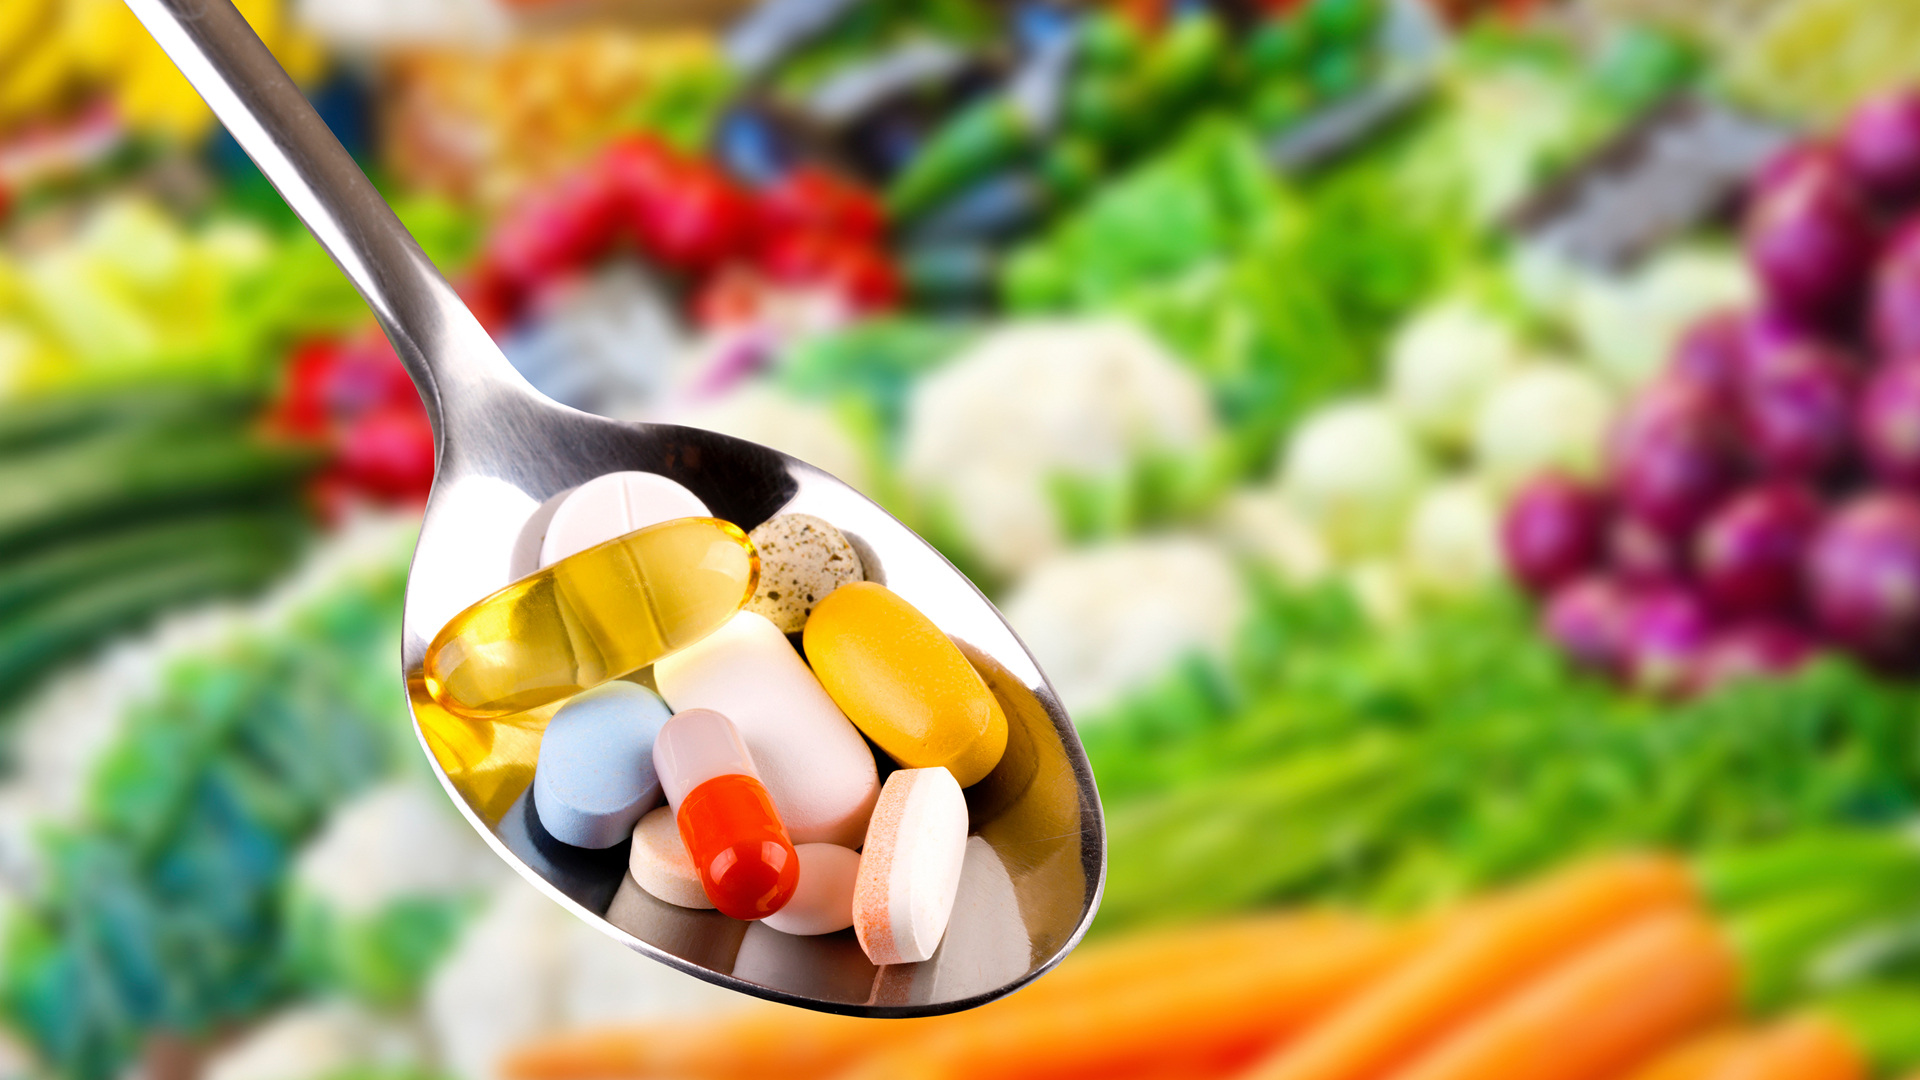 Imagem com uma colher segurando diversas capsulas coloridas e ao fundo diversos legumes coloridos